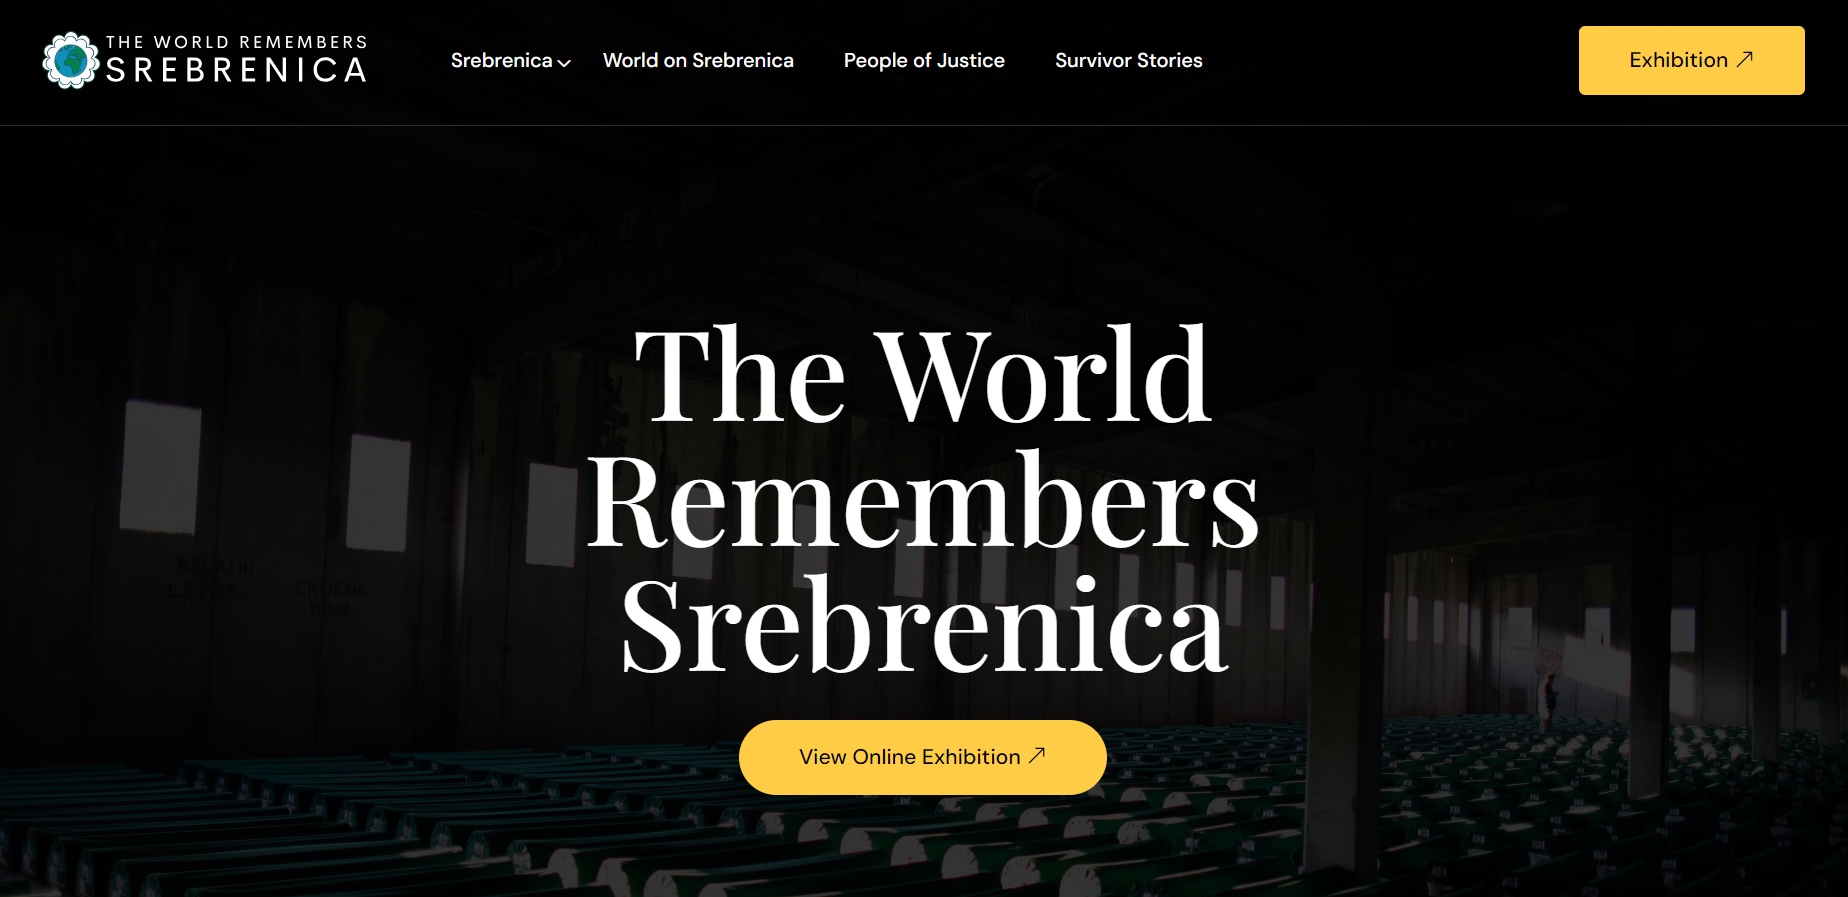 Svijet_-_Srebrenica.jpg